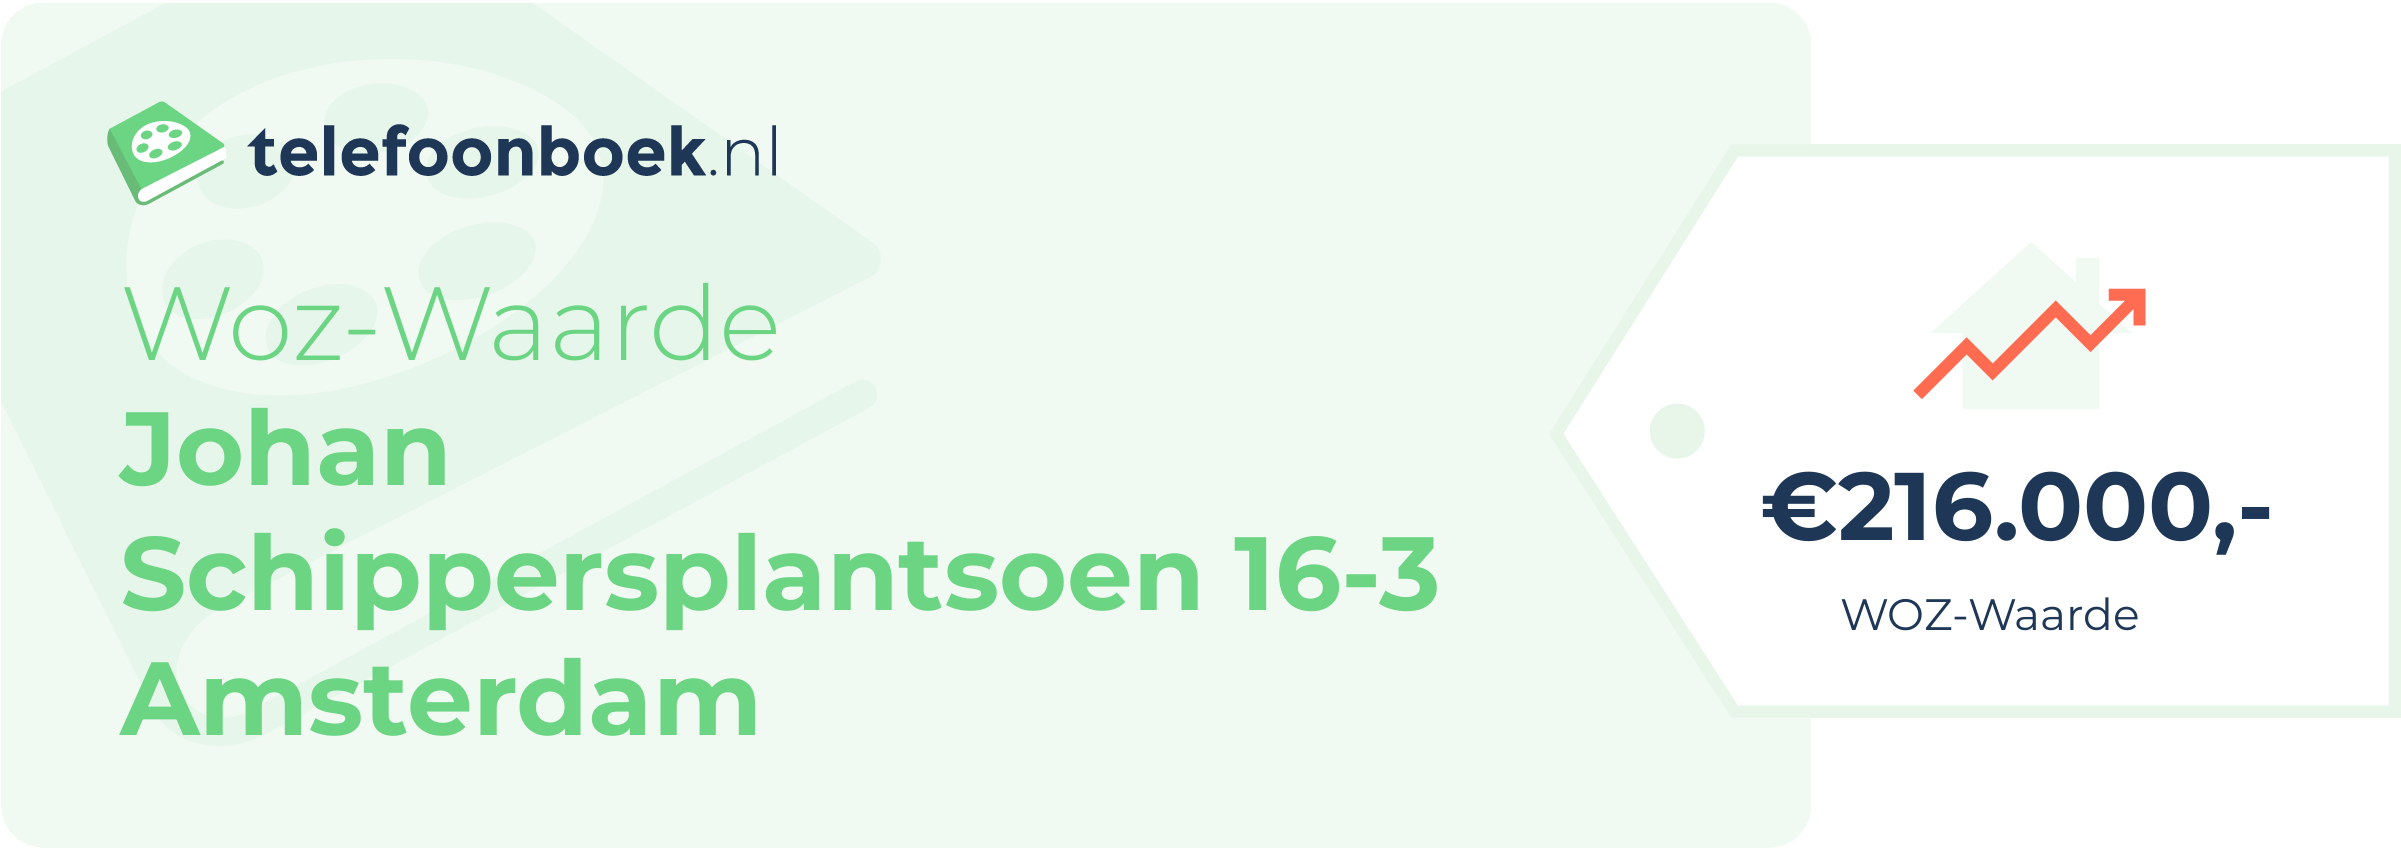 WOZ-waarde Johan Schippersplantsoen 16-3 Amsterdam